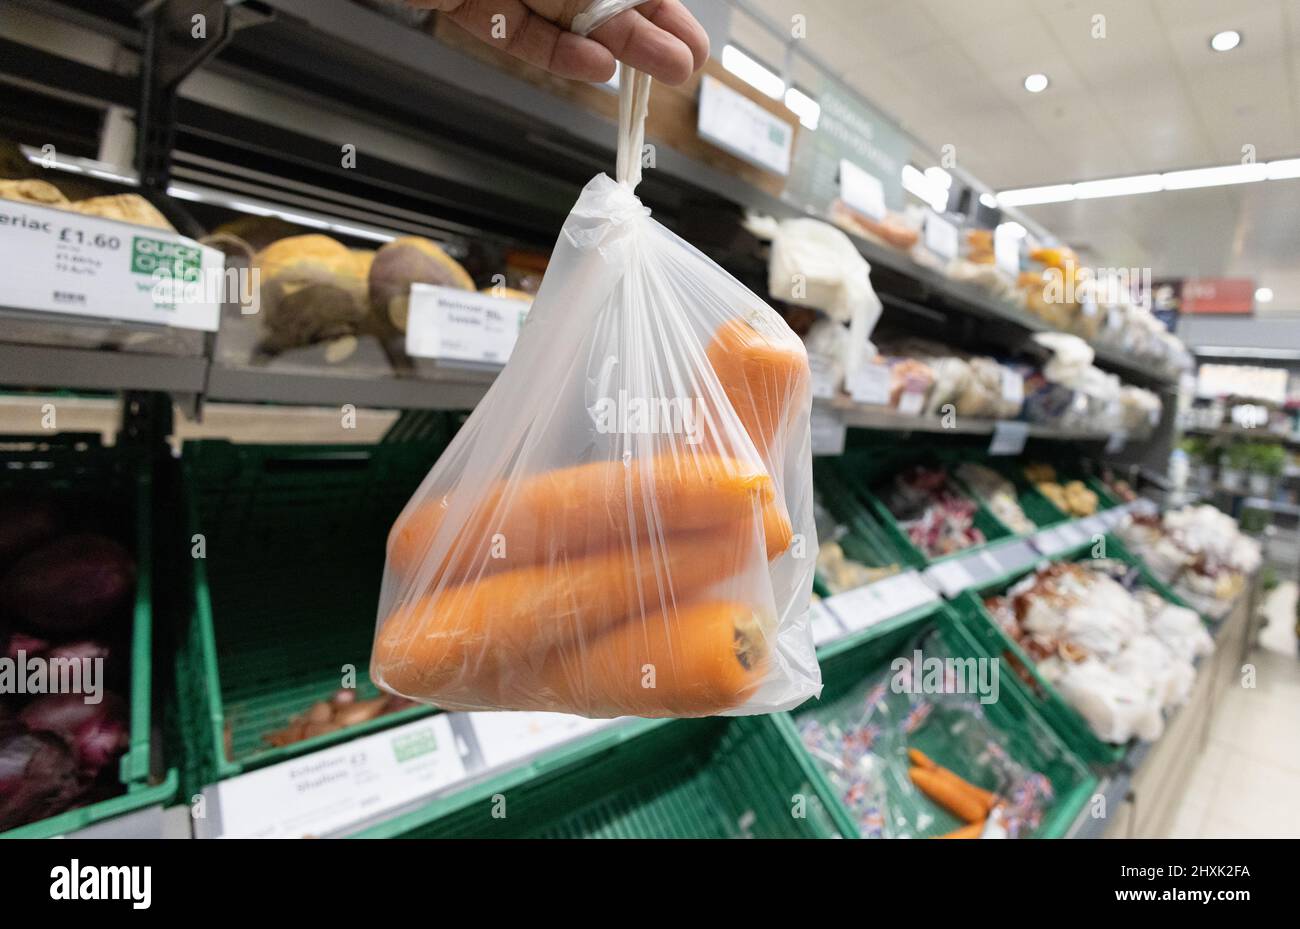 Acheter des carottes de supermarché au Royaume-Uni; des carottes en vrac dans l'allée des légumes de supermarché, exemple d'aliments de base ou de base, allée de légumes de Waitrose, Suffolk au Royaume-Uni Banque D'Images